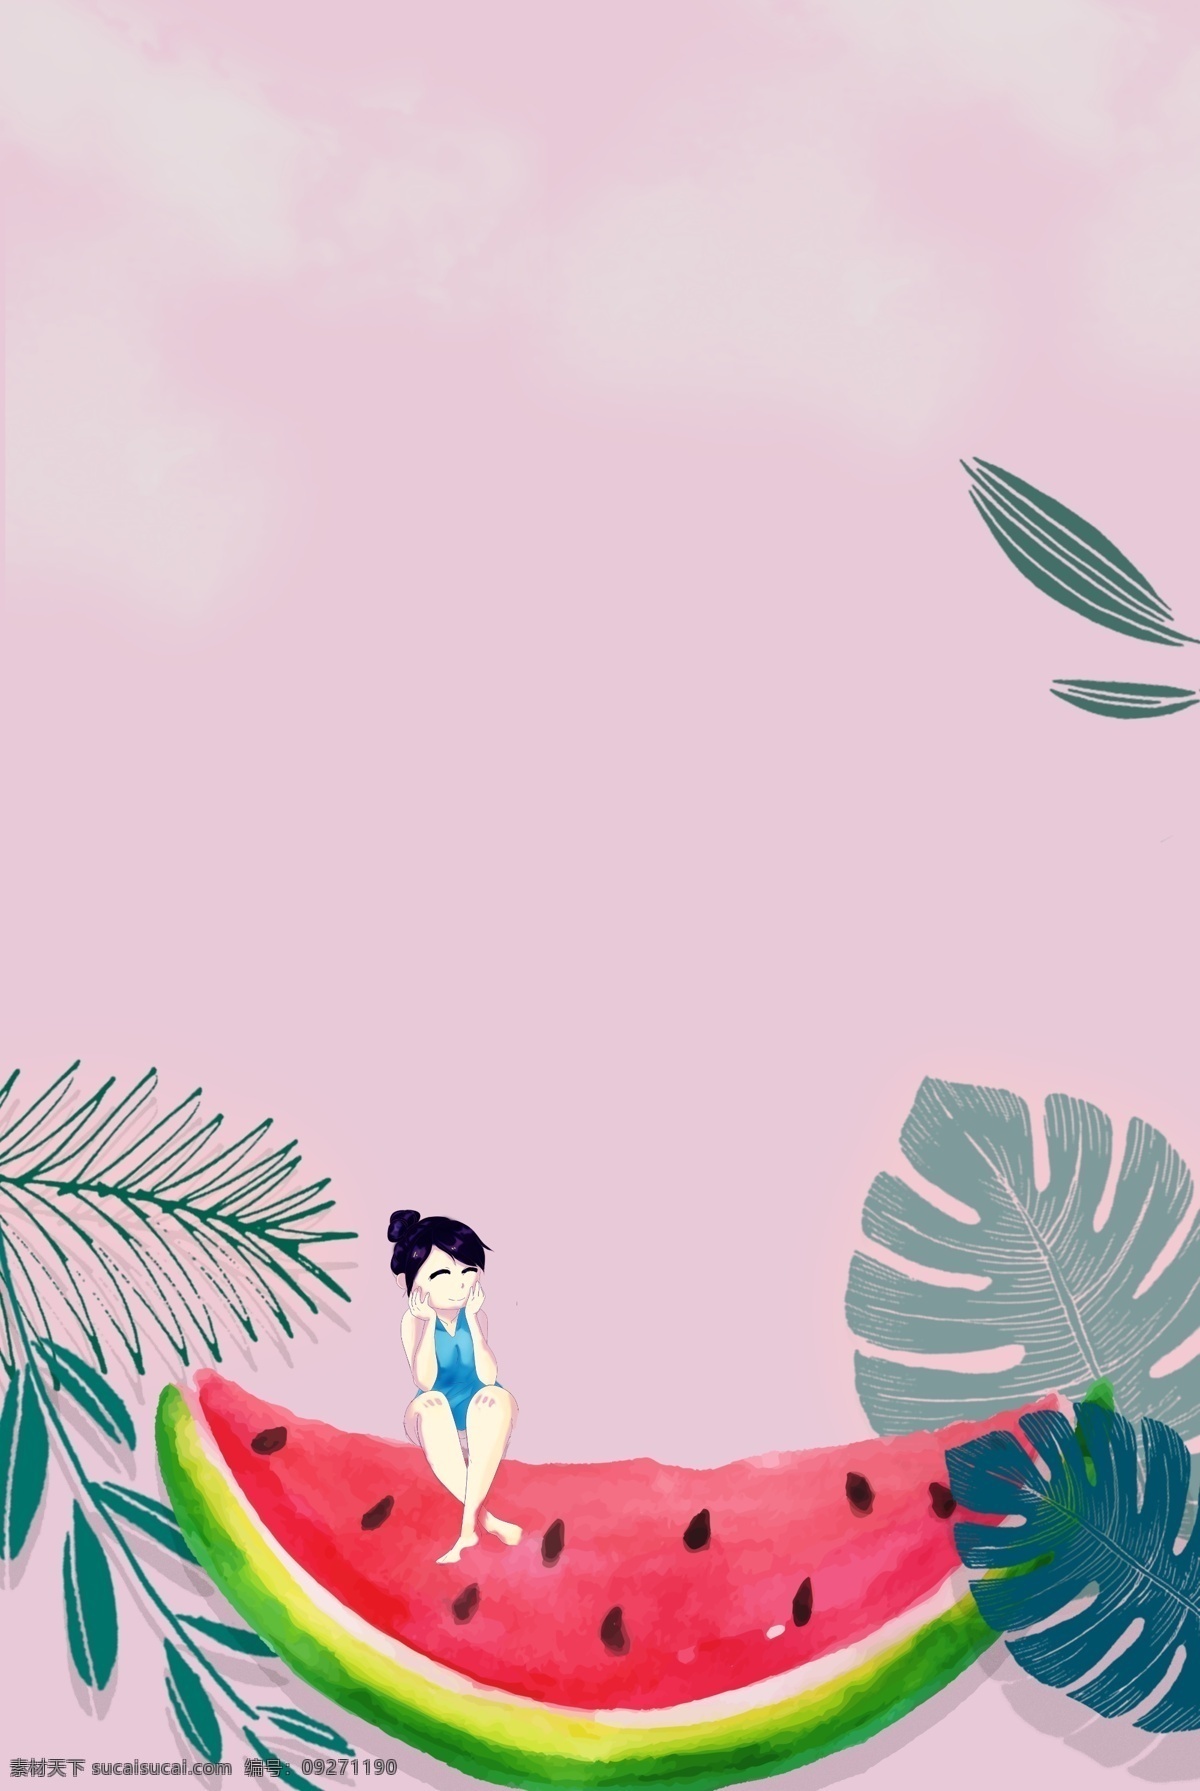 清新 卡通 手绘 风 竖 图 手绘风 女孩 粉色 西瓜 热带风 树叶 背景 海报 竖图